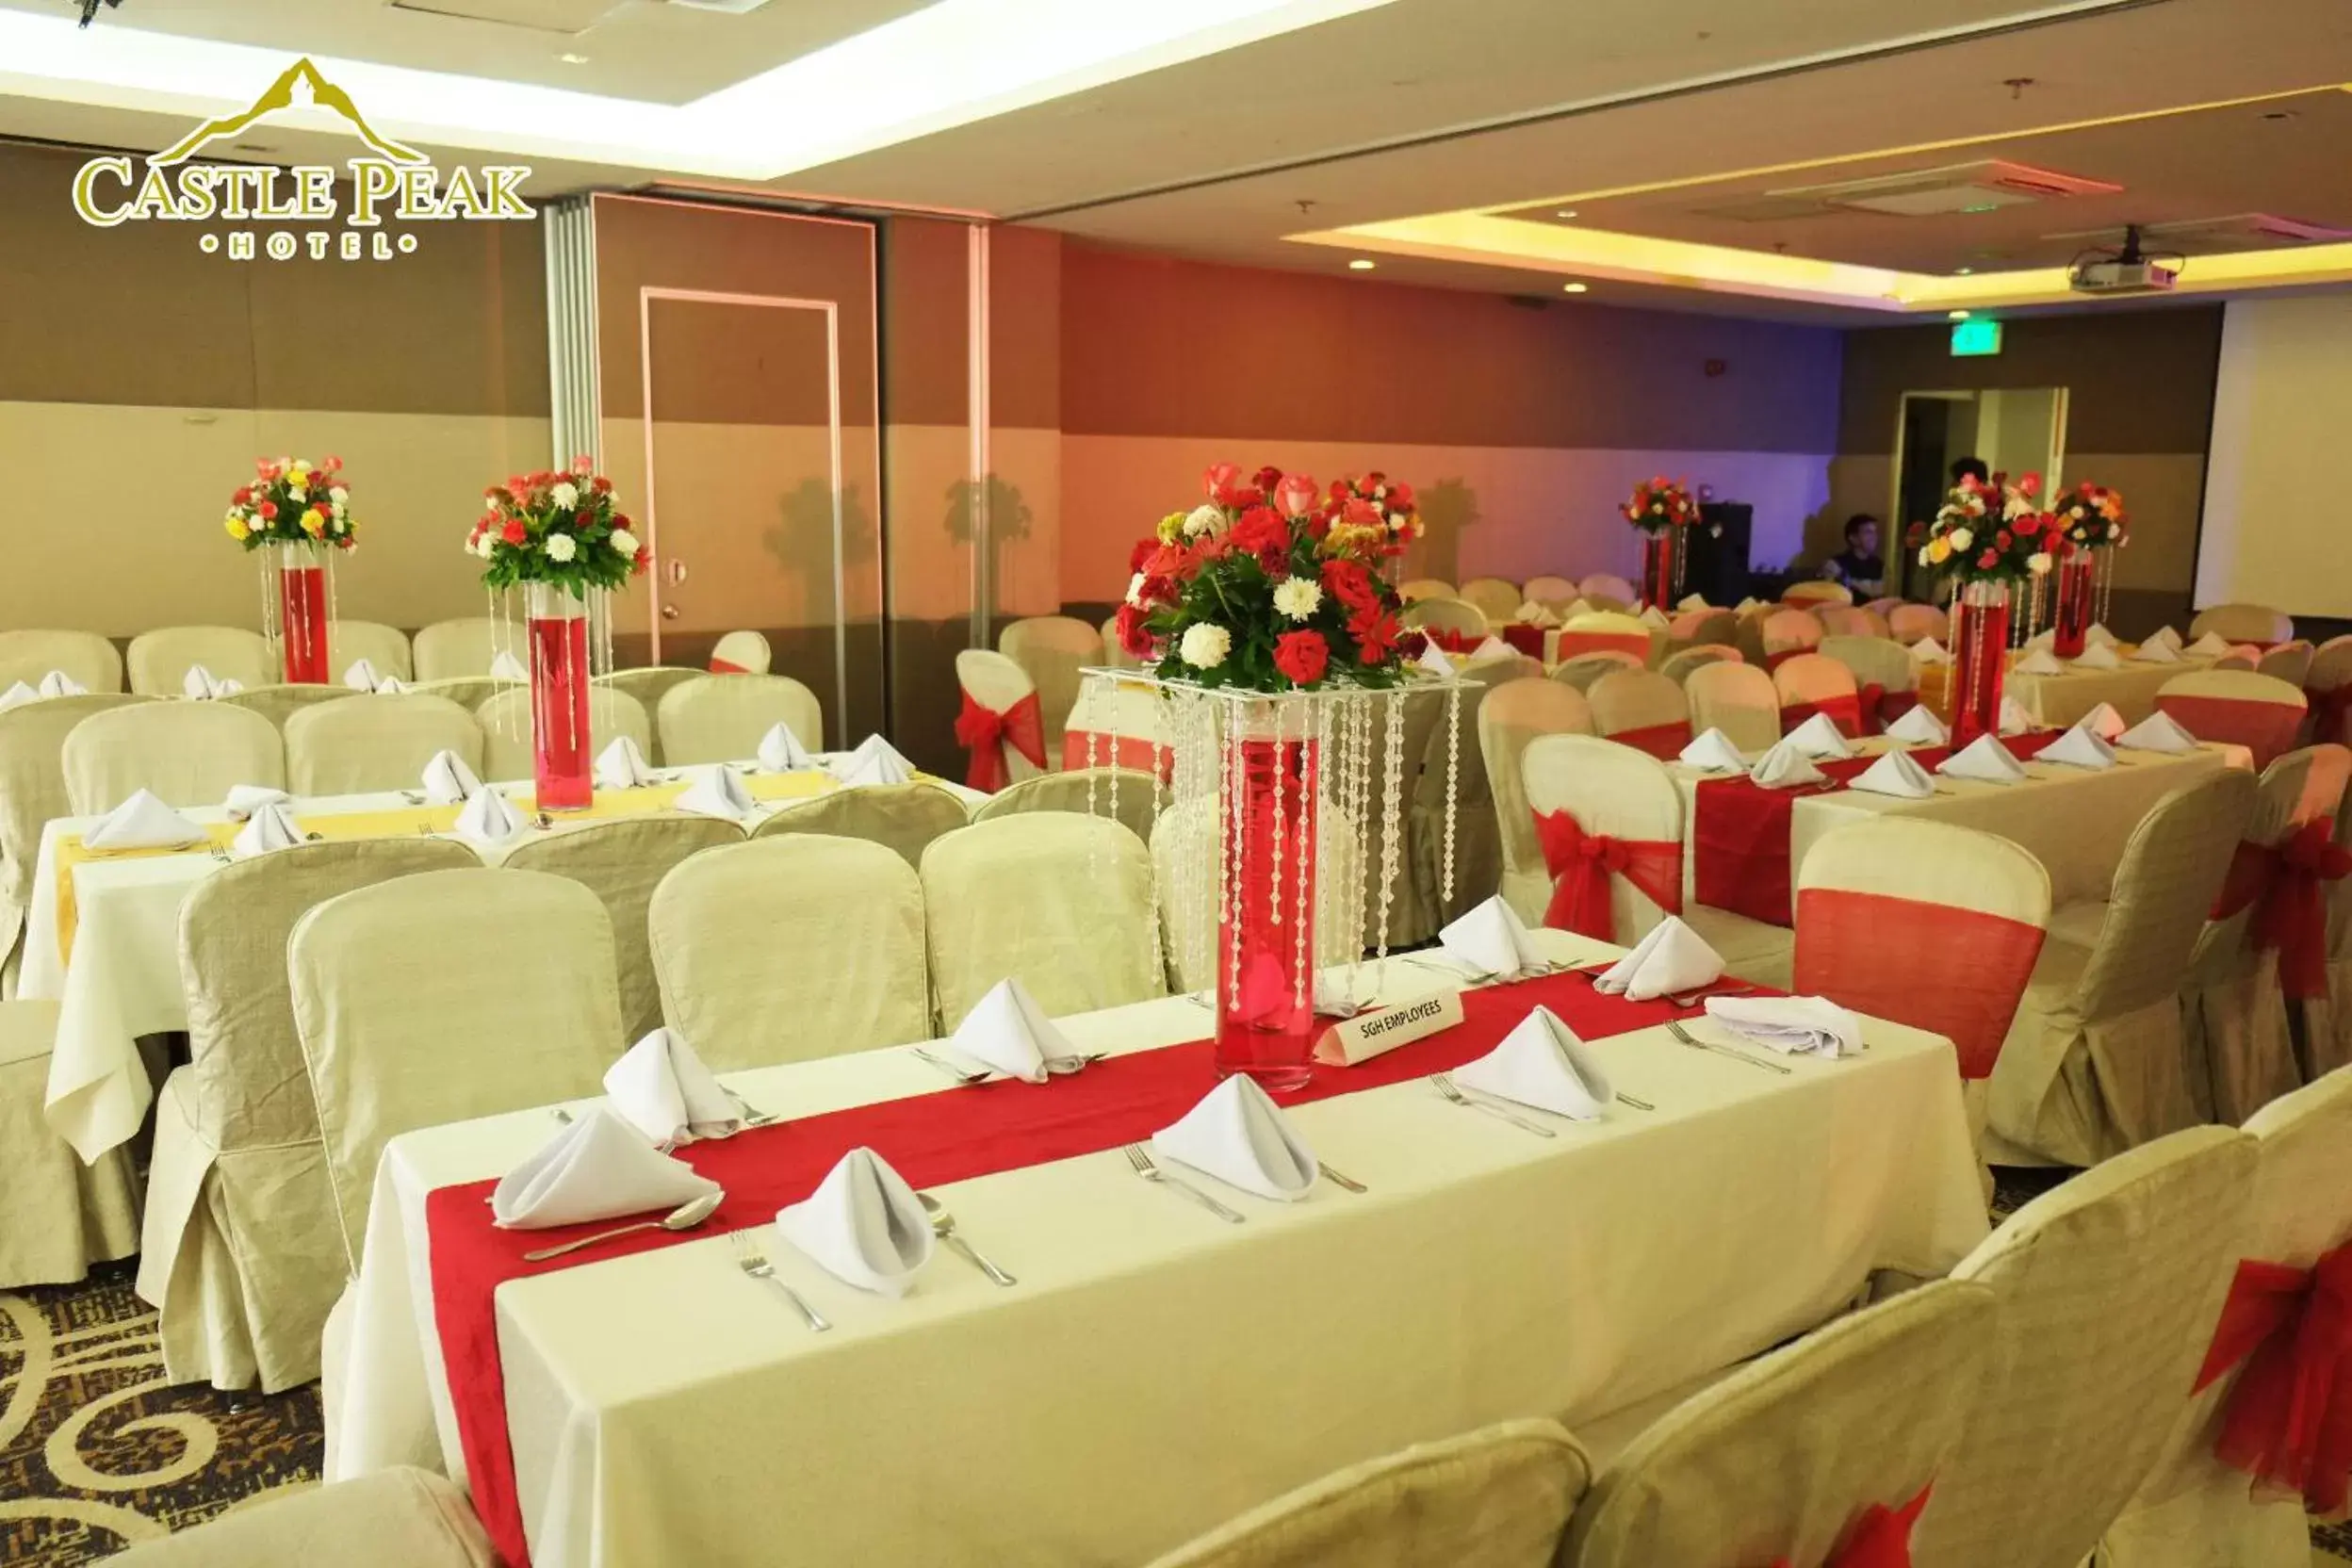 Banquet/Function facilities, Banquet Facilities in Castle Peak Hotel